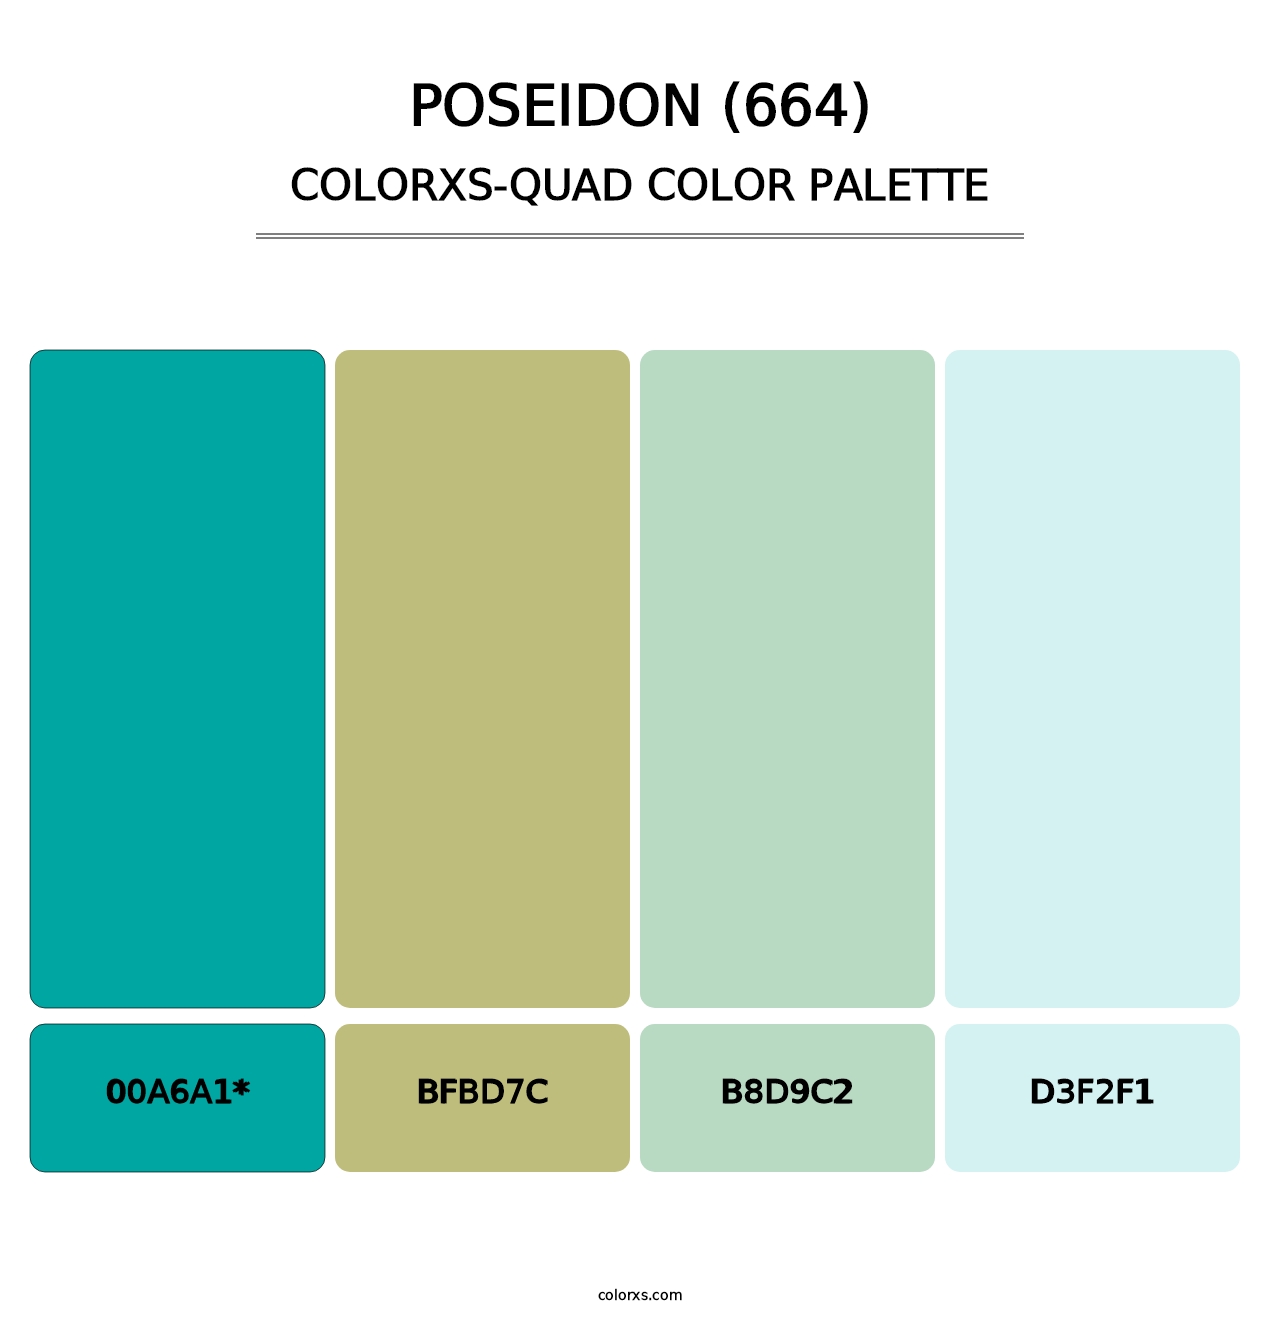 Poseidon (664) - Colorxs Quad Palette